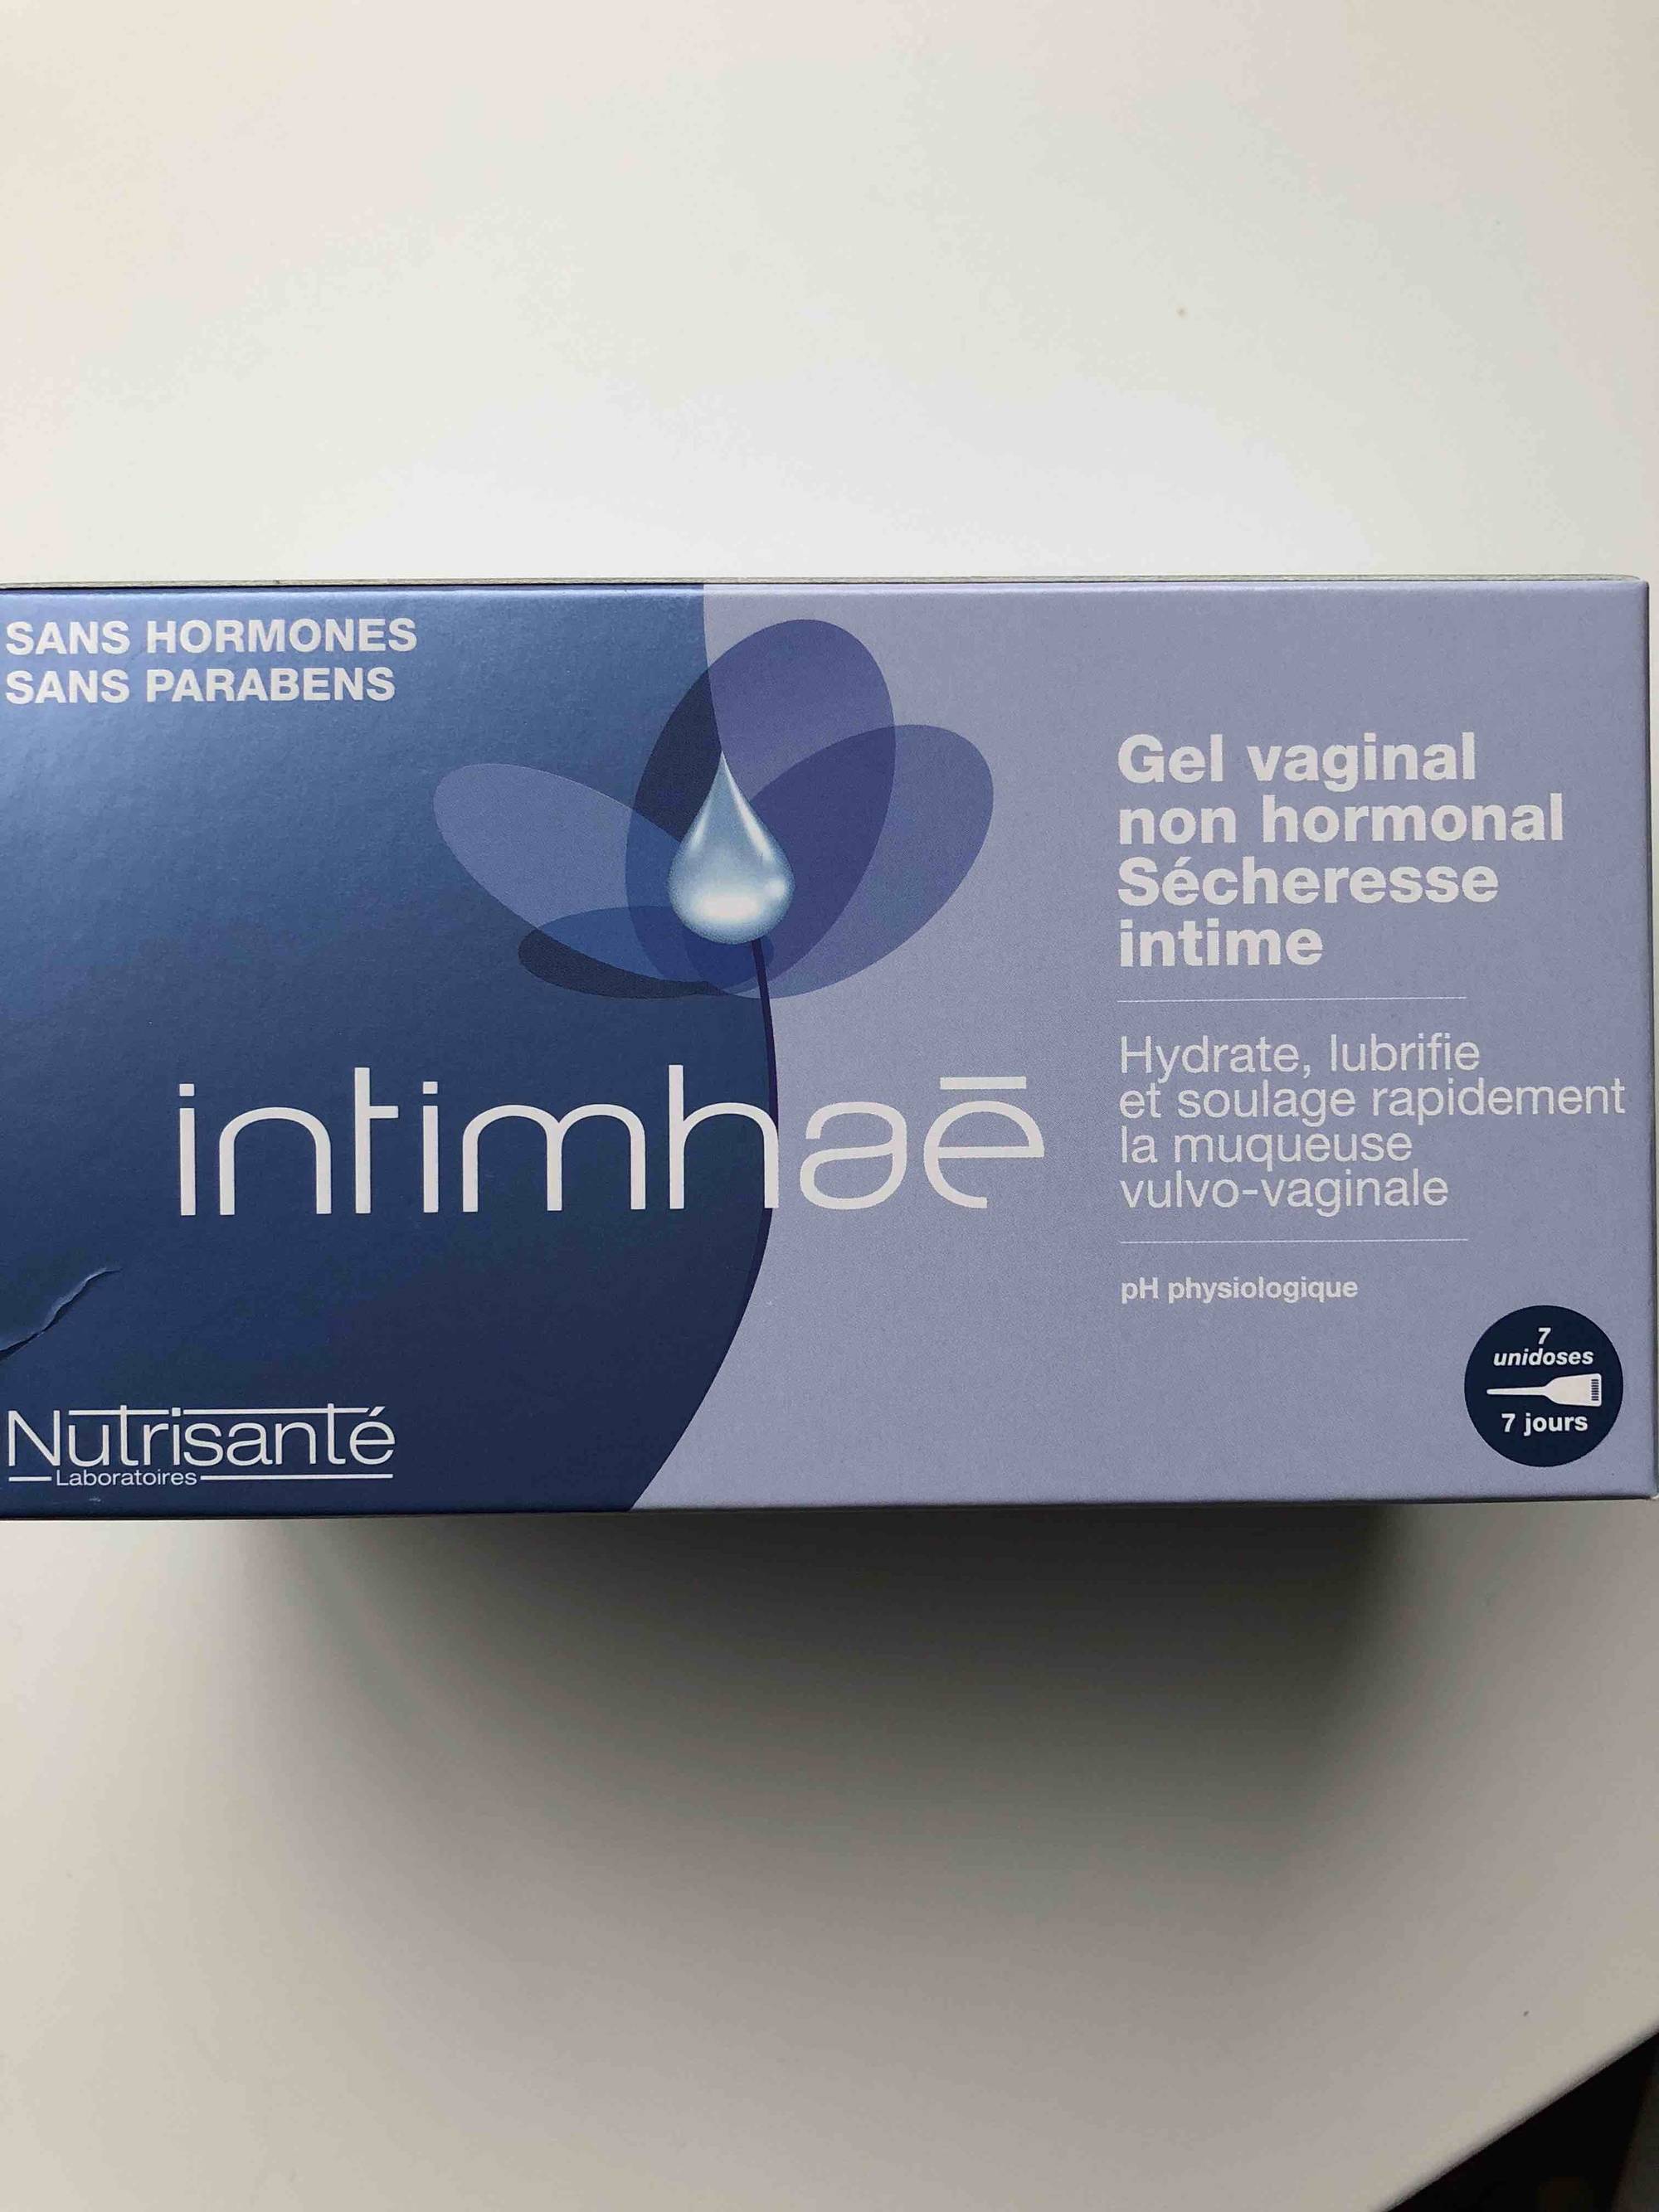 Replens gel vaginal sans hormones - Sécheresse intime - Lubrifiant